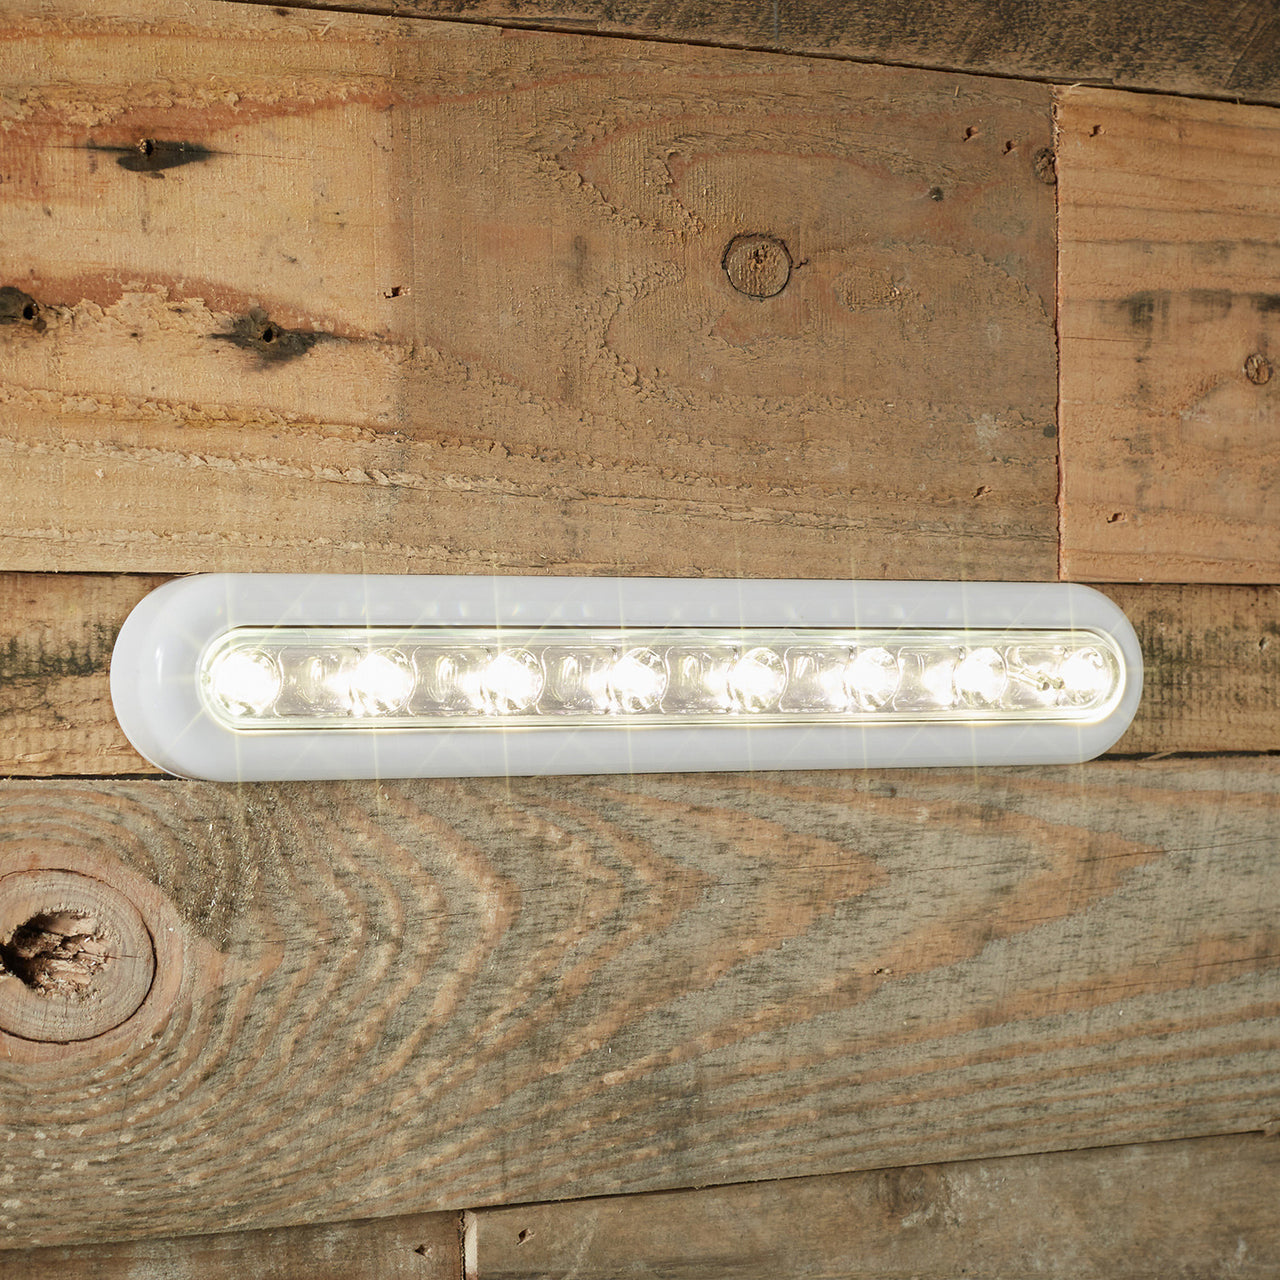 Lampe d'armoire - 2 pièces - télécommande - 8 lampes LED - blanc